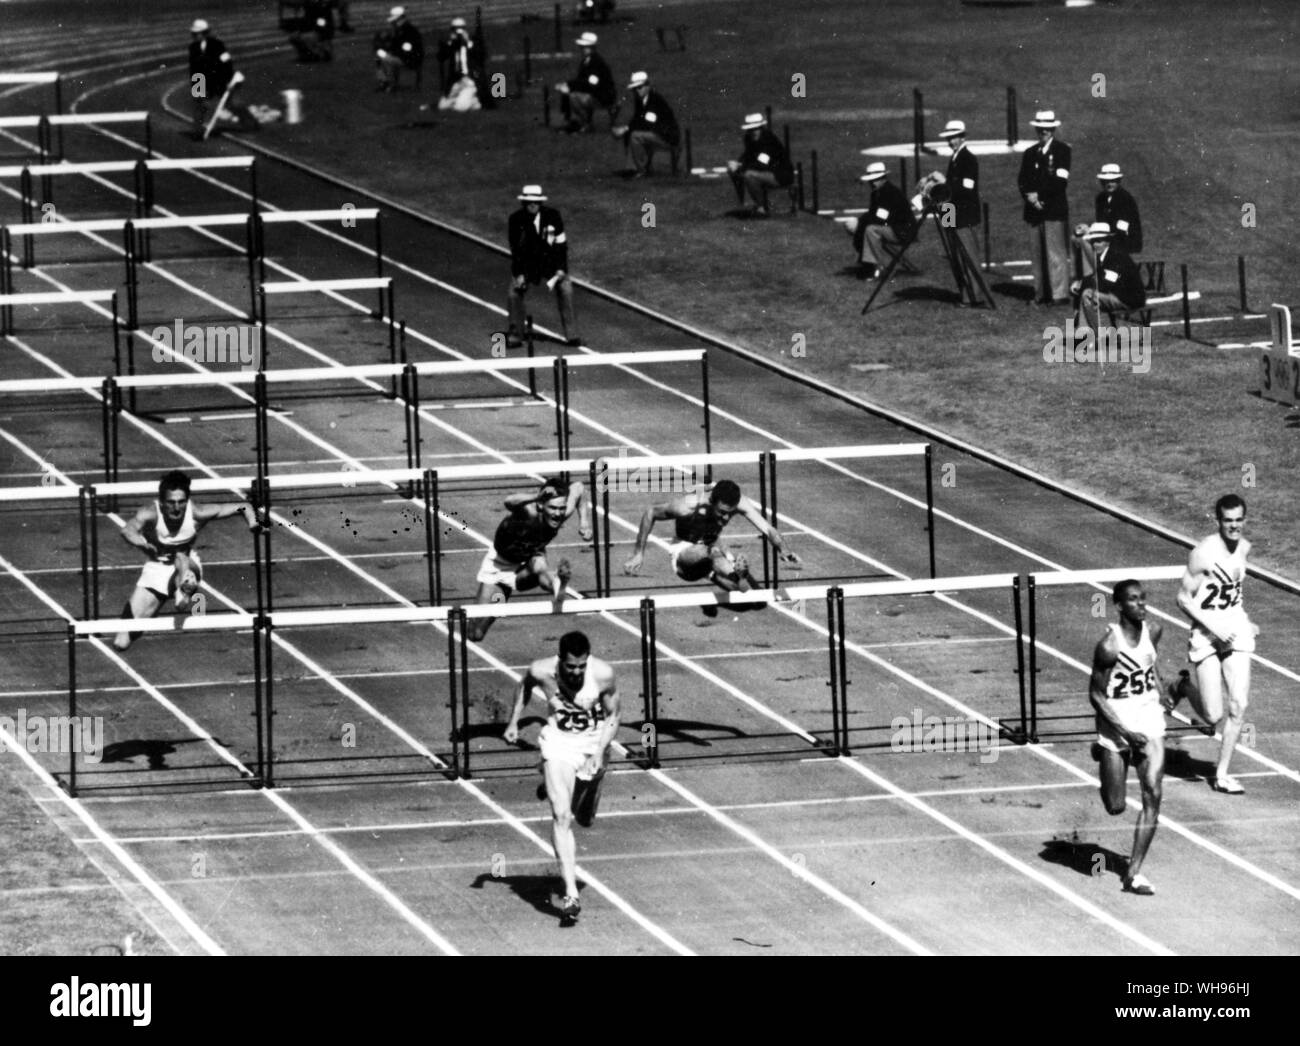 Aus., Melbourne, Jeux Olympiques, 1956 : 1-2-3 pour les USA ! Le domaine prend le dernier obstacle du 110 m haies des Jeux olympiques, remporté par Lee Calhoun de USA () dans le nouveau temps record de 13,5 secondes. Deuxième, c'était Jack Davis () et la troisième a été Joel Shankle ().. Banque D'Images